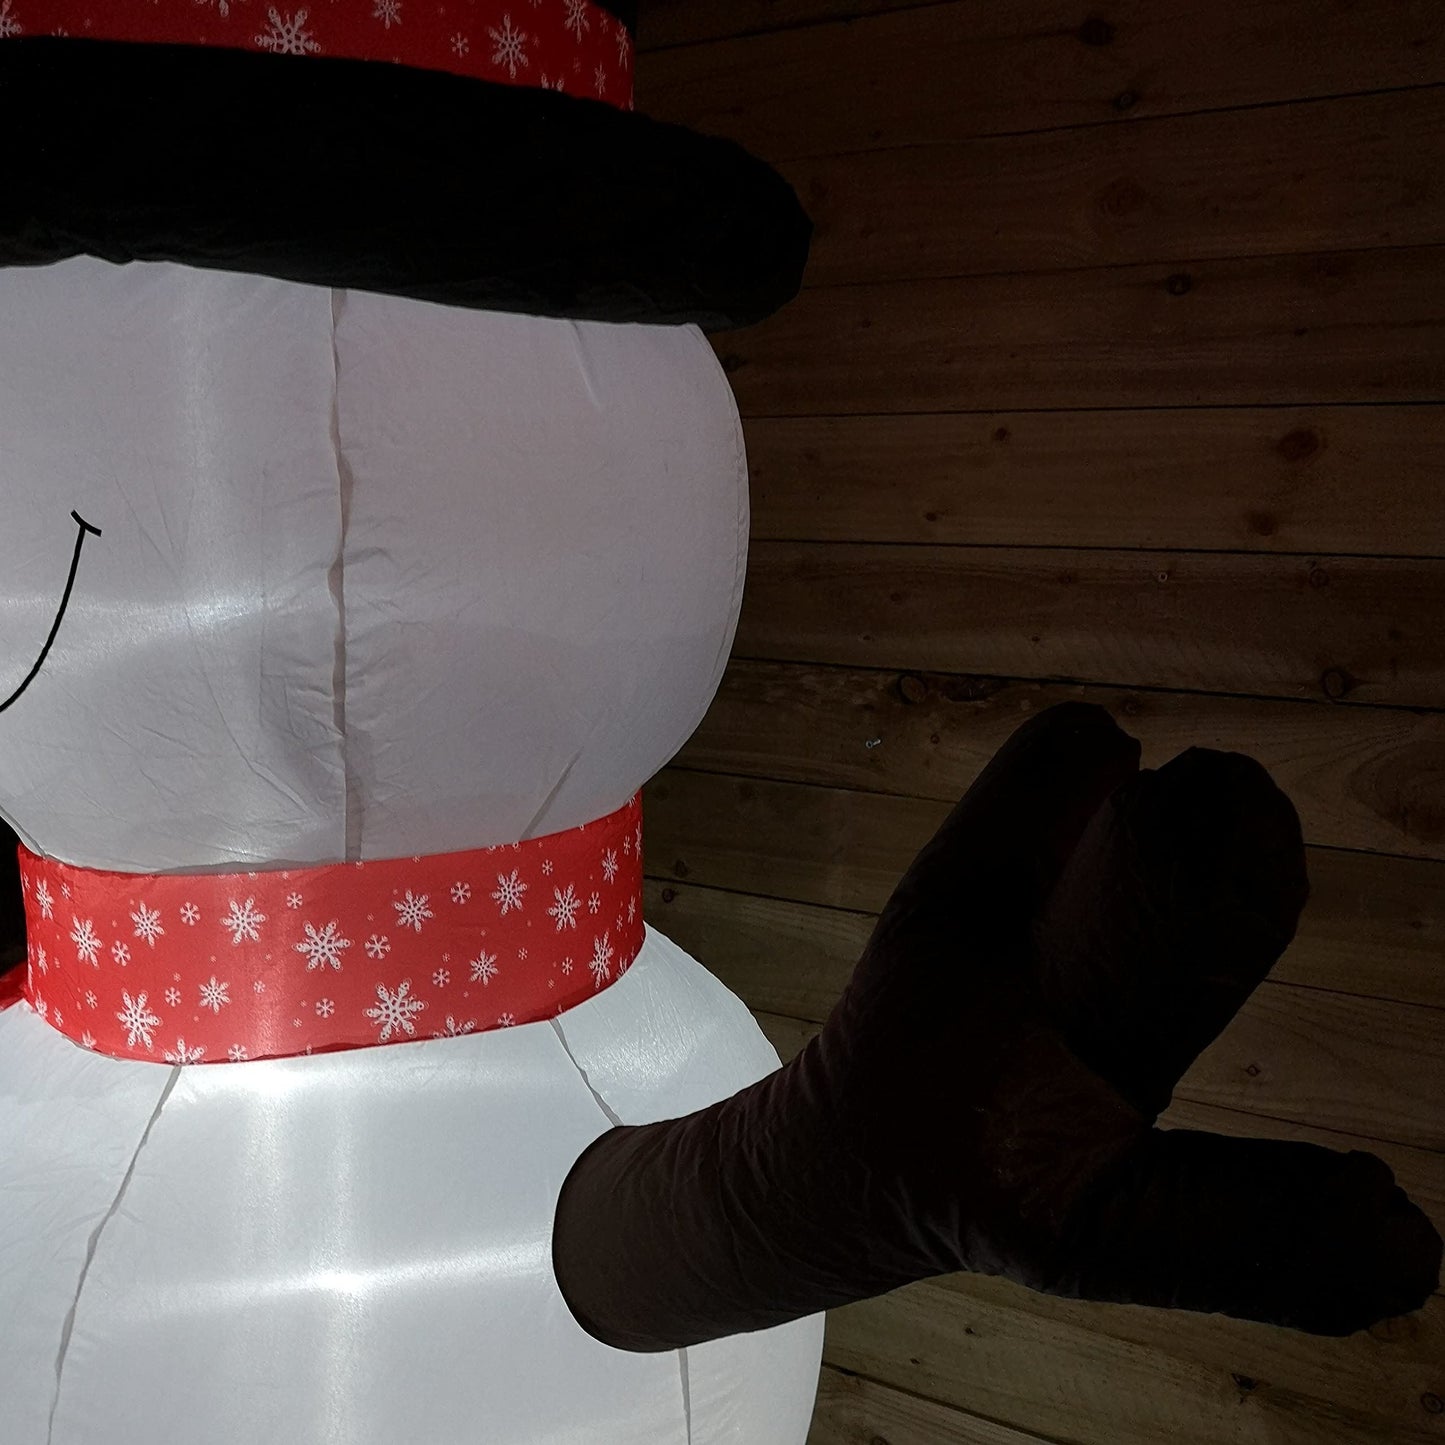 SnowTime 245cm Inflatable Light Up Snowman